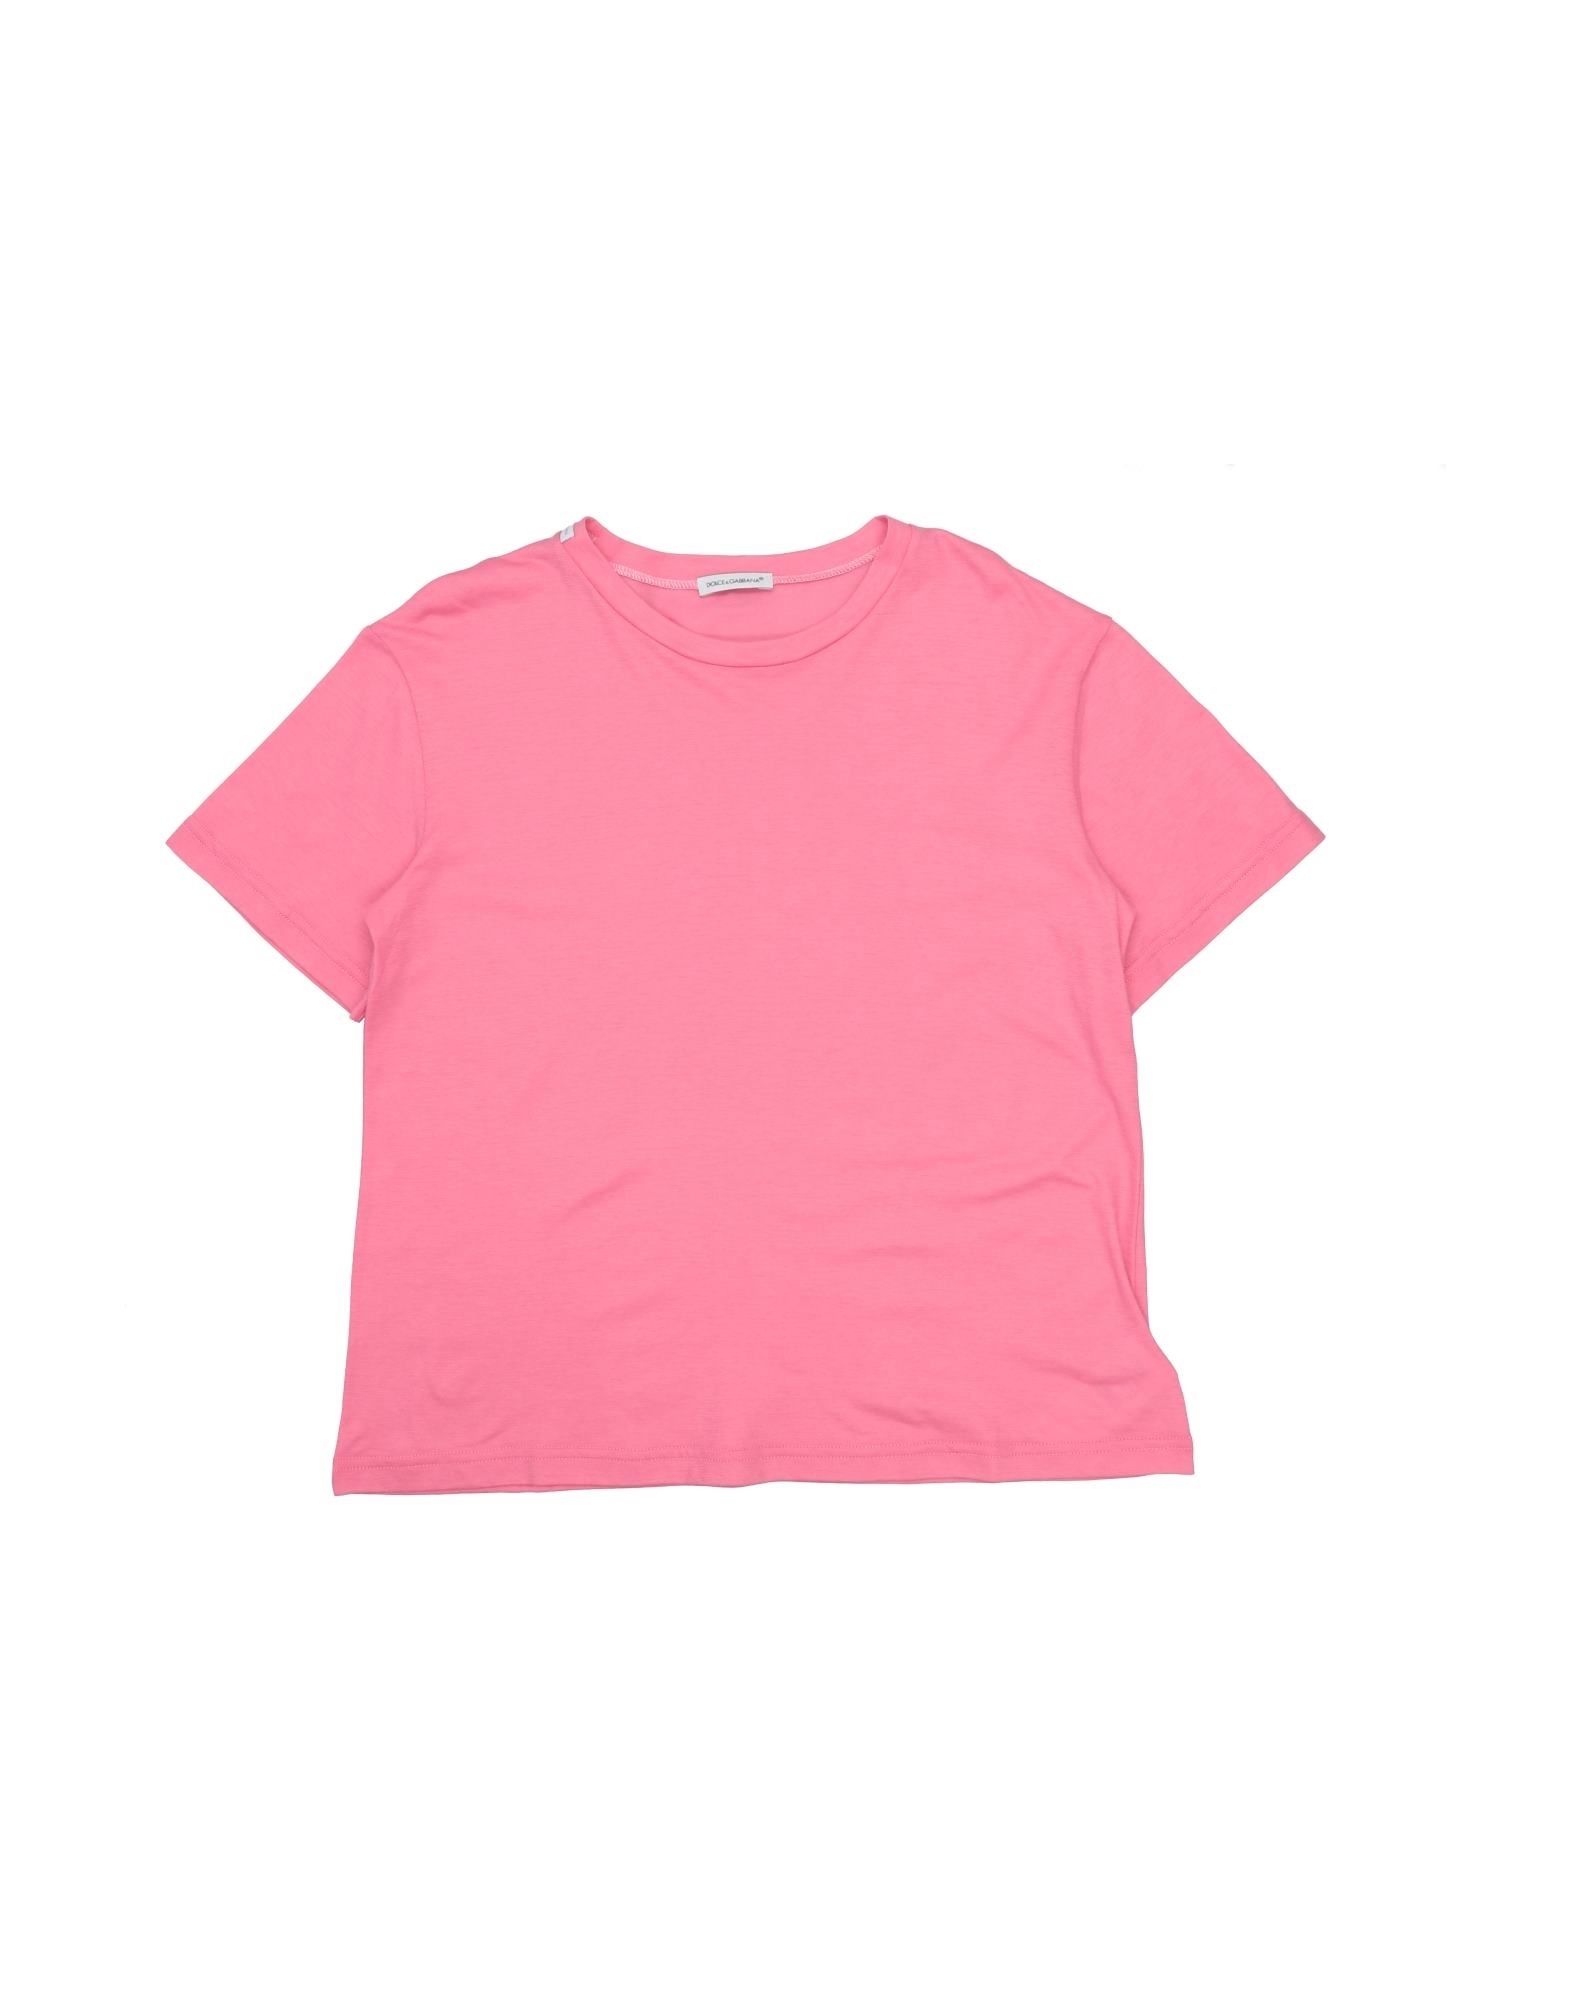 Dolce & Gabbana Kids' T-shirts In Coral